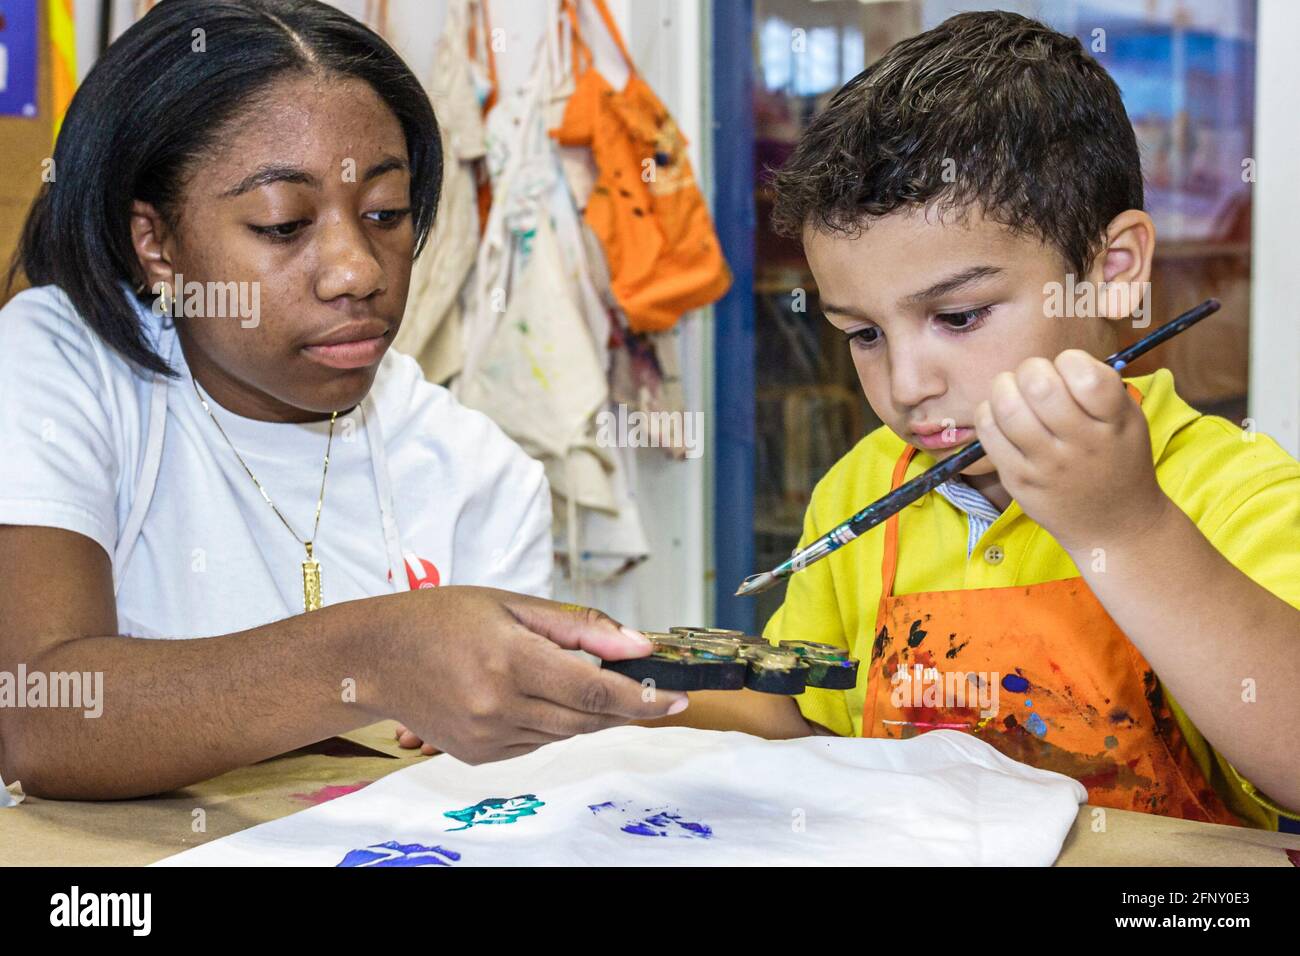 Miami Florida, Children's Museum t-shirt atelier de décoration, hispanique garçon enfant enfant peinture Noir fille femelle, adolescent adolescent adolescent adolescent étudiant bénévole Banque D'Images